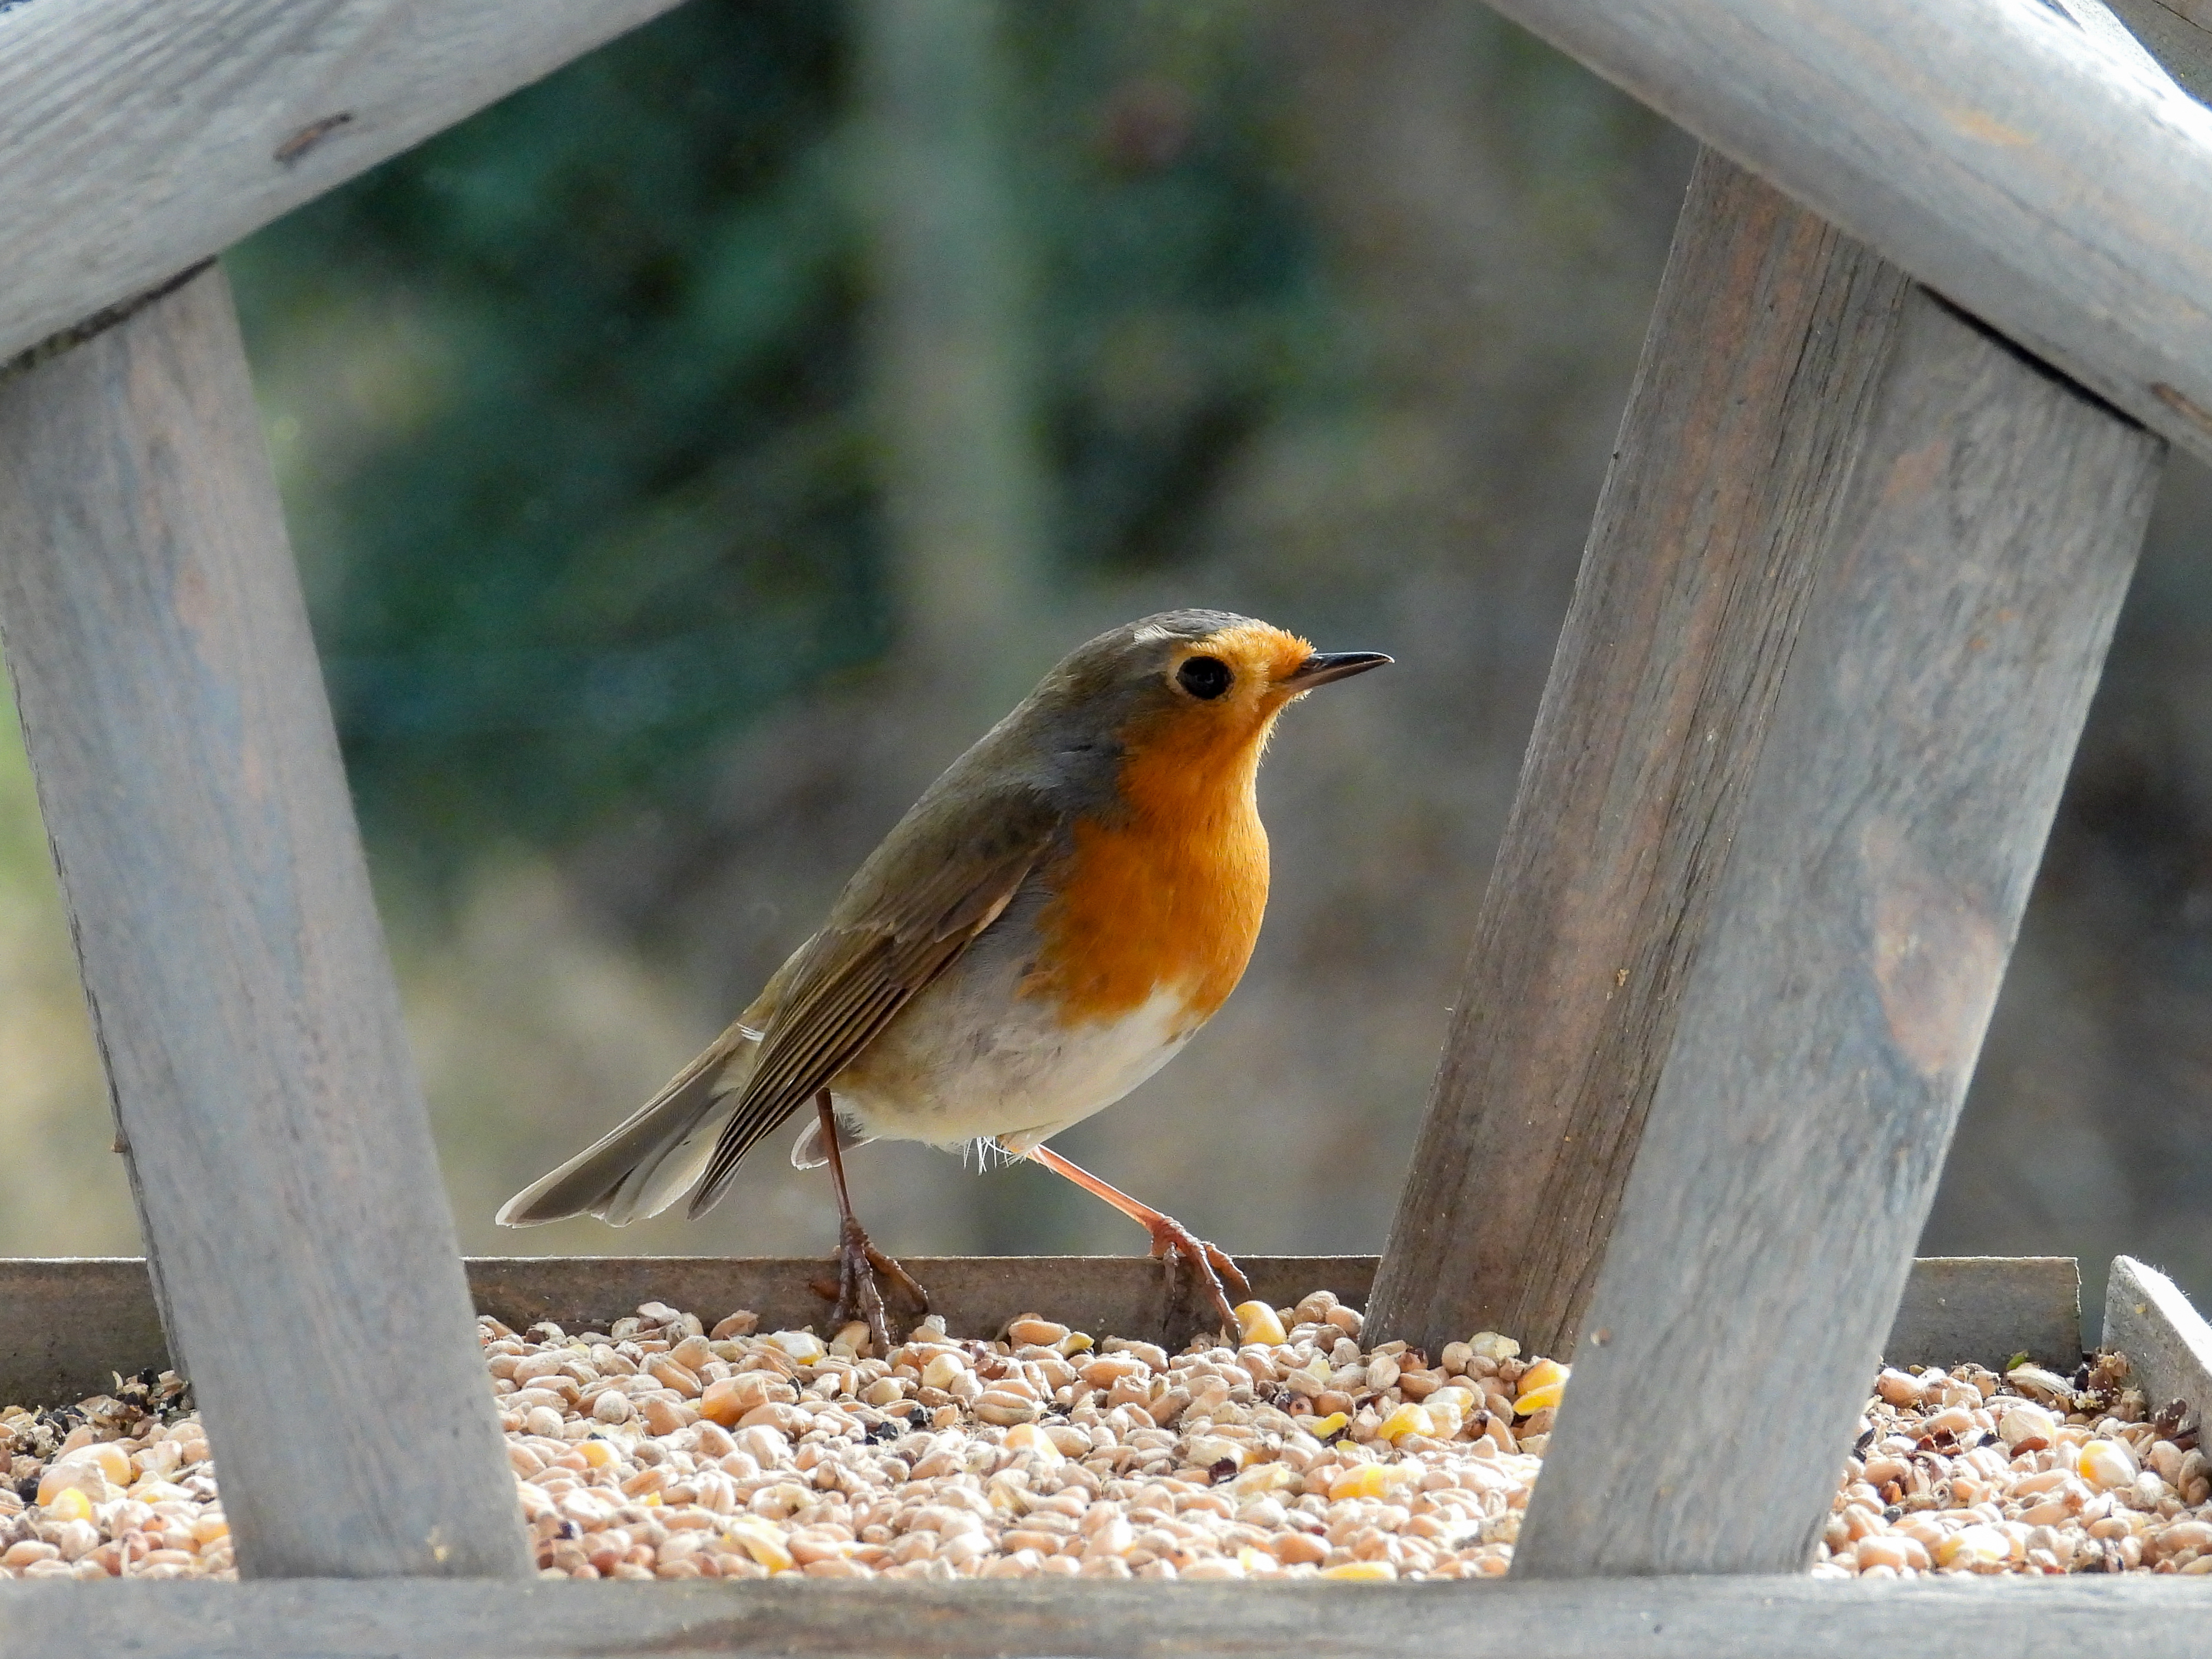 Installer une mangeoire permet d'aider les oiseaux à se nourrir pendant certaines périodes de l'année. © yvonne, Adobe Stock